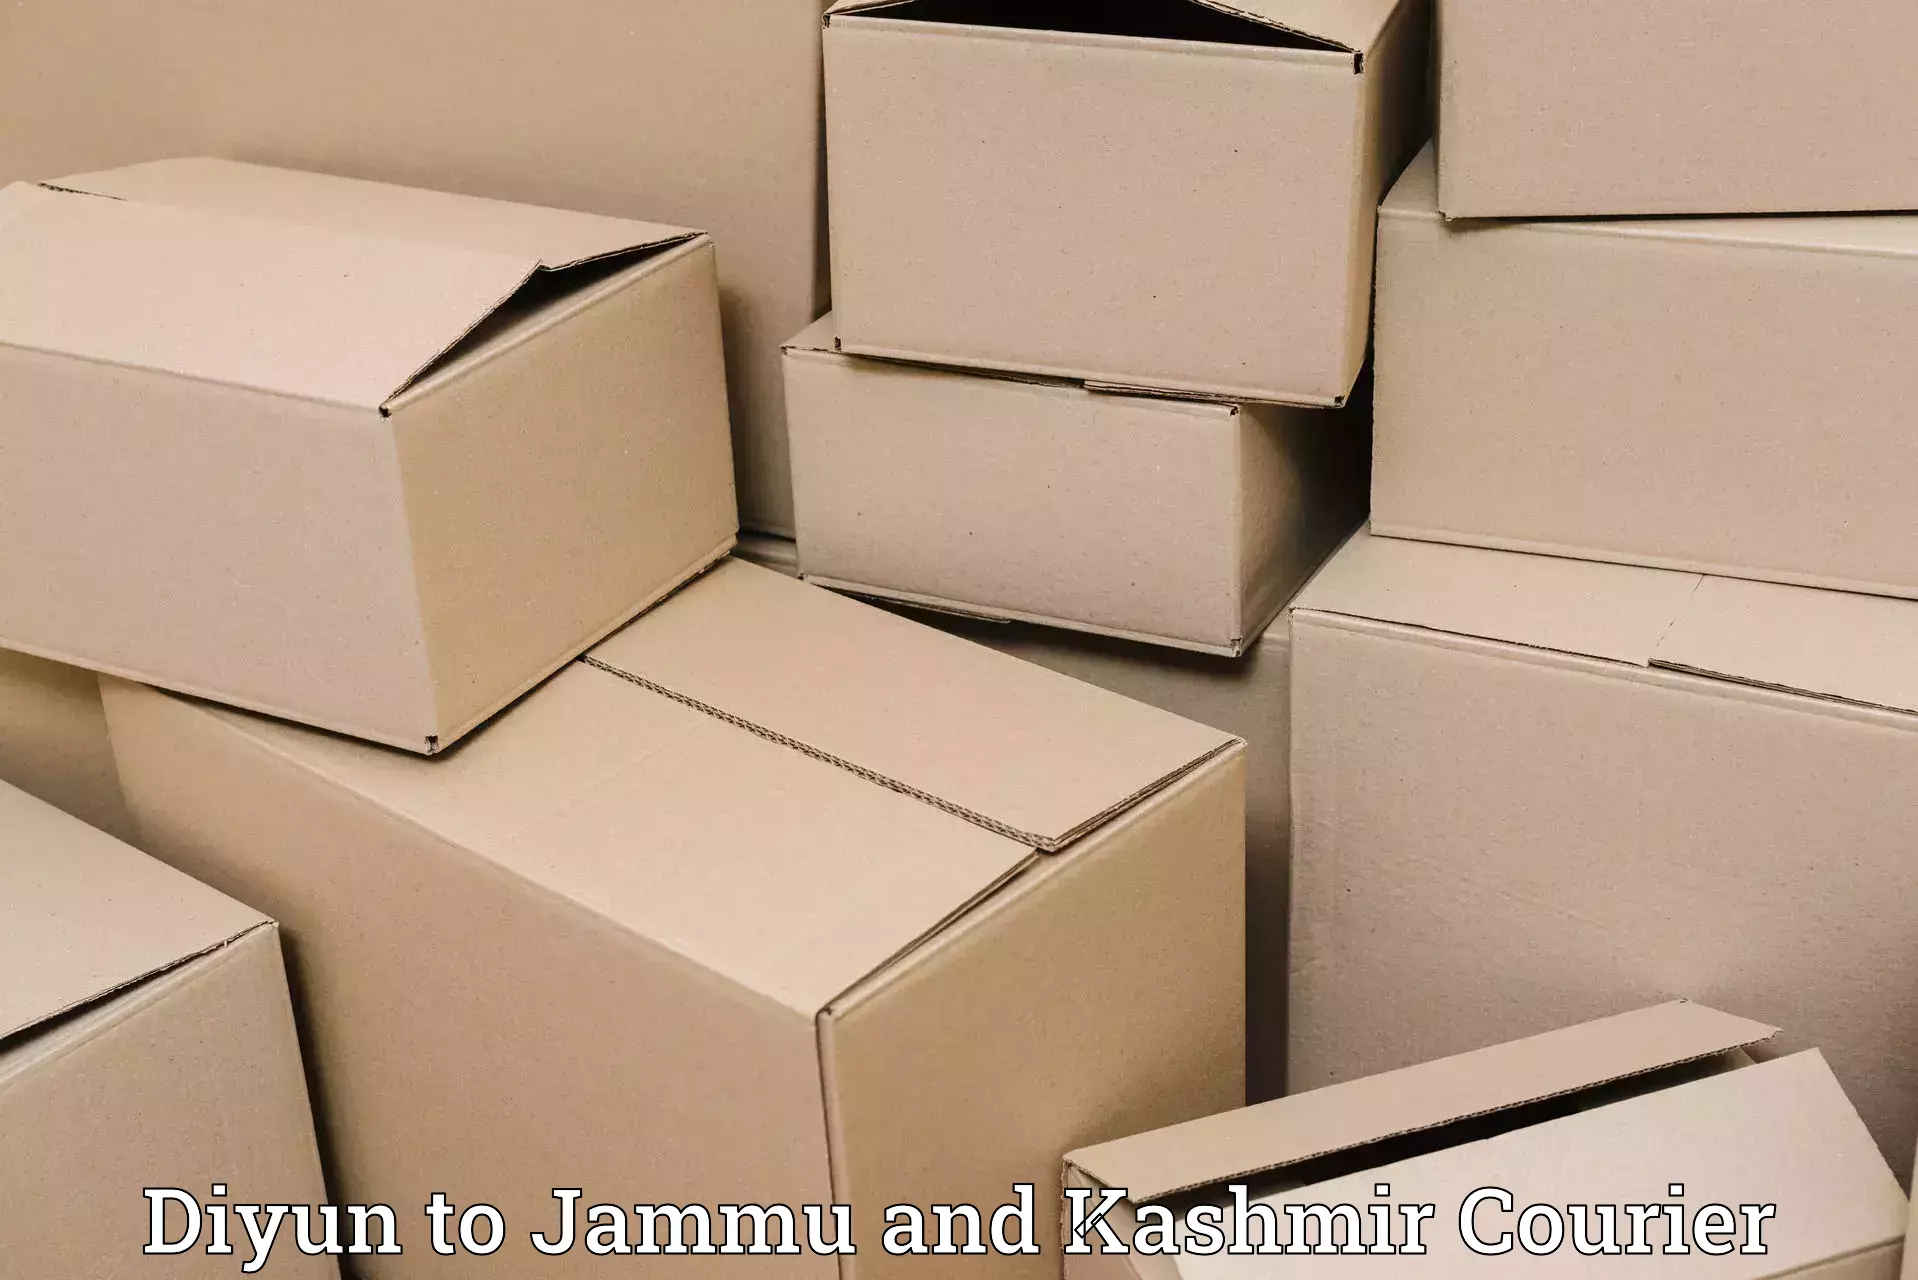 Baggage transport services Diyun to Jammu and Kashmir